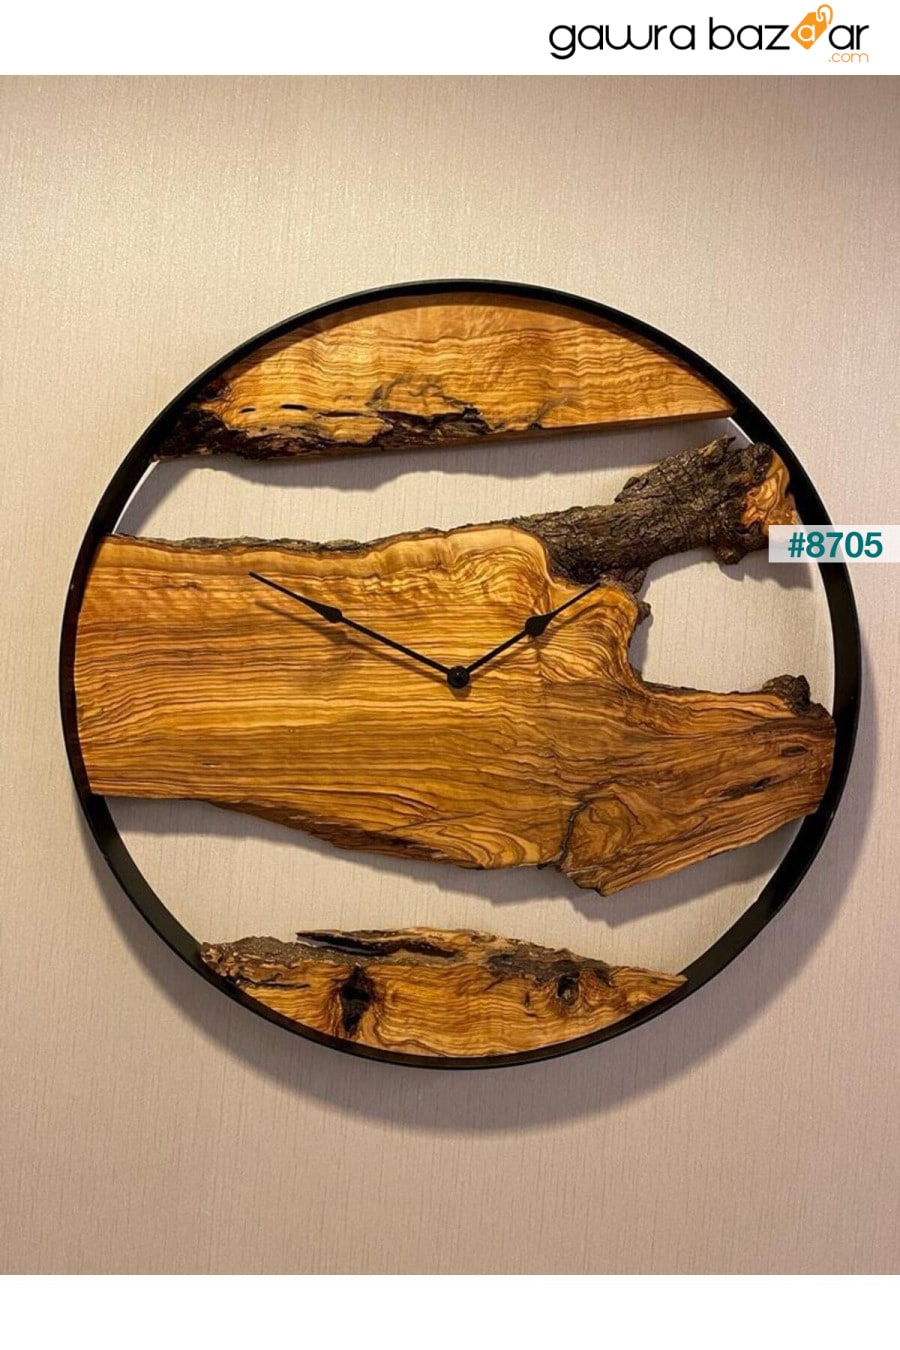 ساعة حائط شجرة الزيتون، ساعة حائط خشبية AnatoliaWooD 3